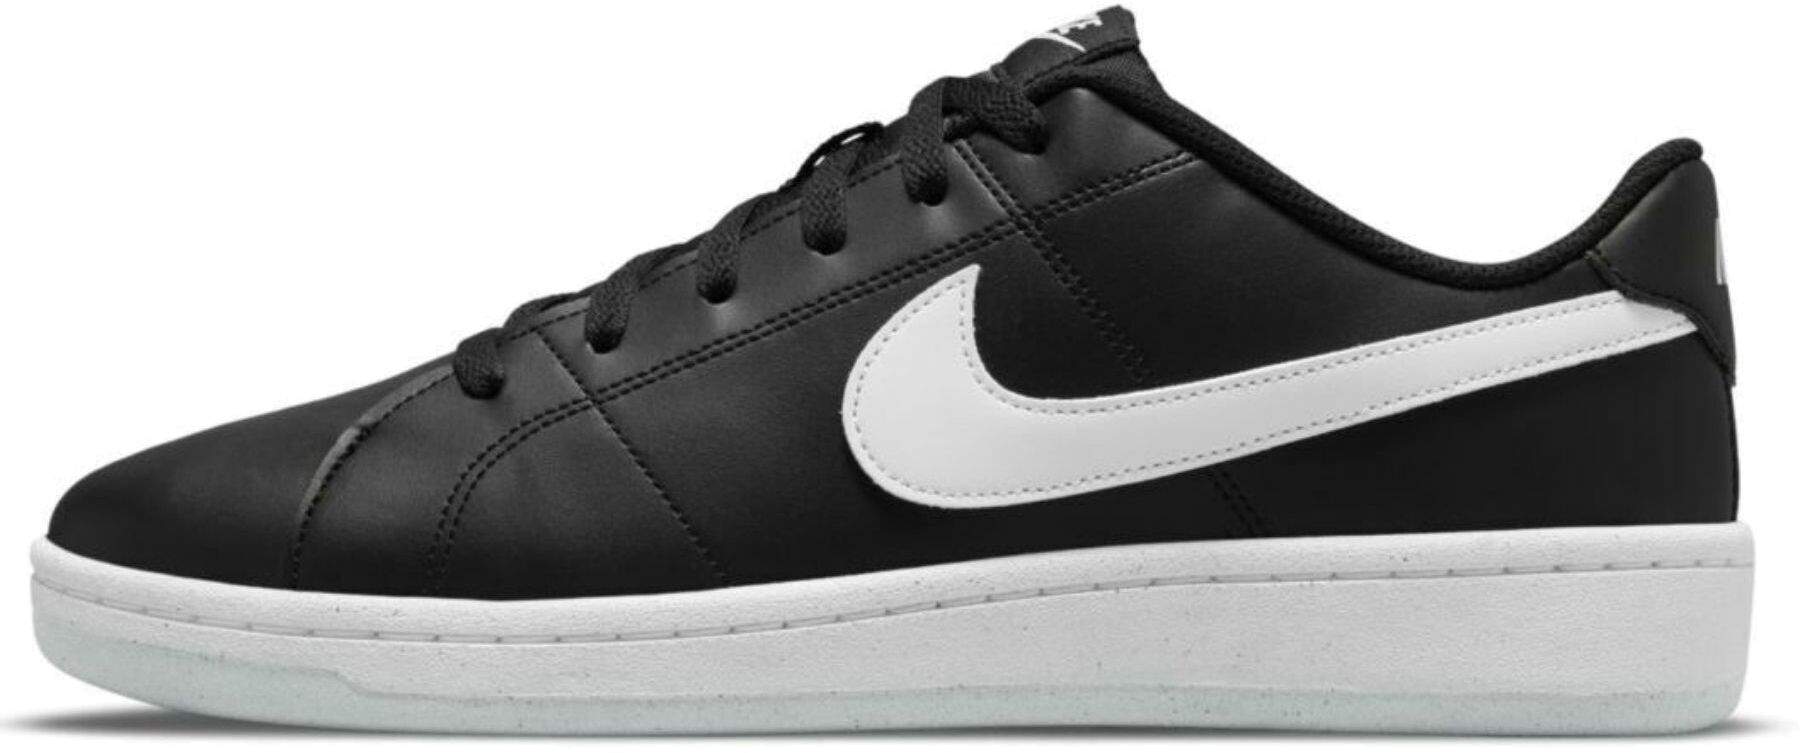 Кеды мужские Nike Court Royale 2 Better Essential черные 9.5 US - купить в SportPoint, цена на Мегамаркет